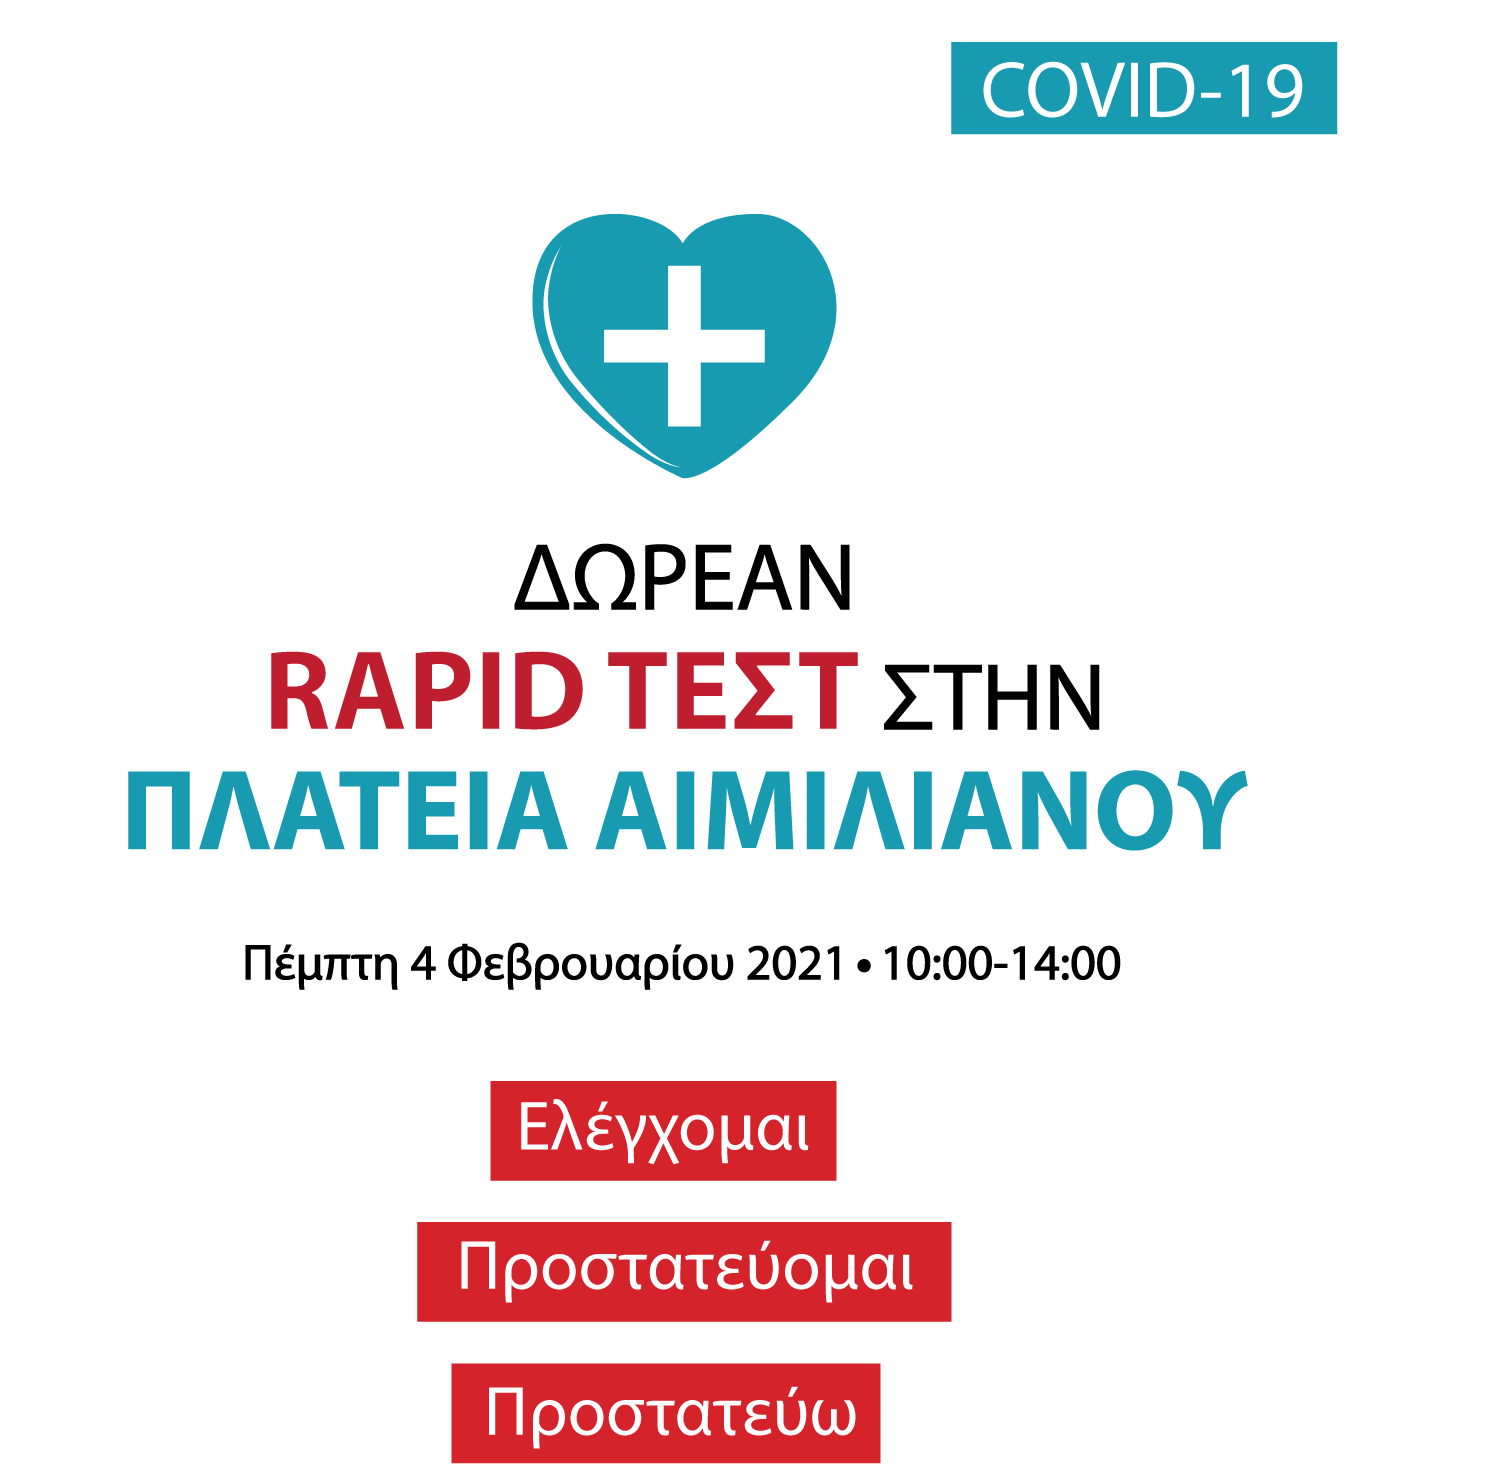 Δωρεάν rapid test από τον ΕΟΔΥ στην Κεντρική Πλατεία Αιμιλιανού, την Πέμπτη 4 Φεβρουαρίου